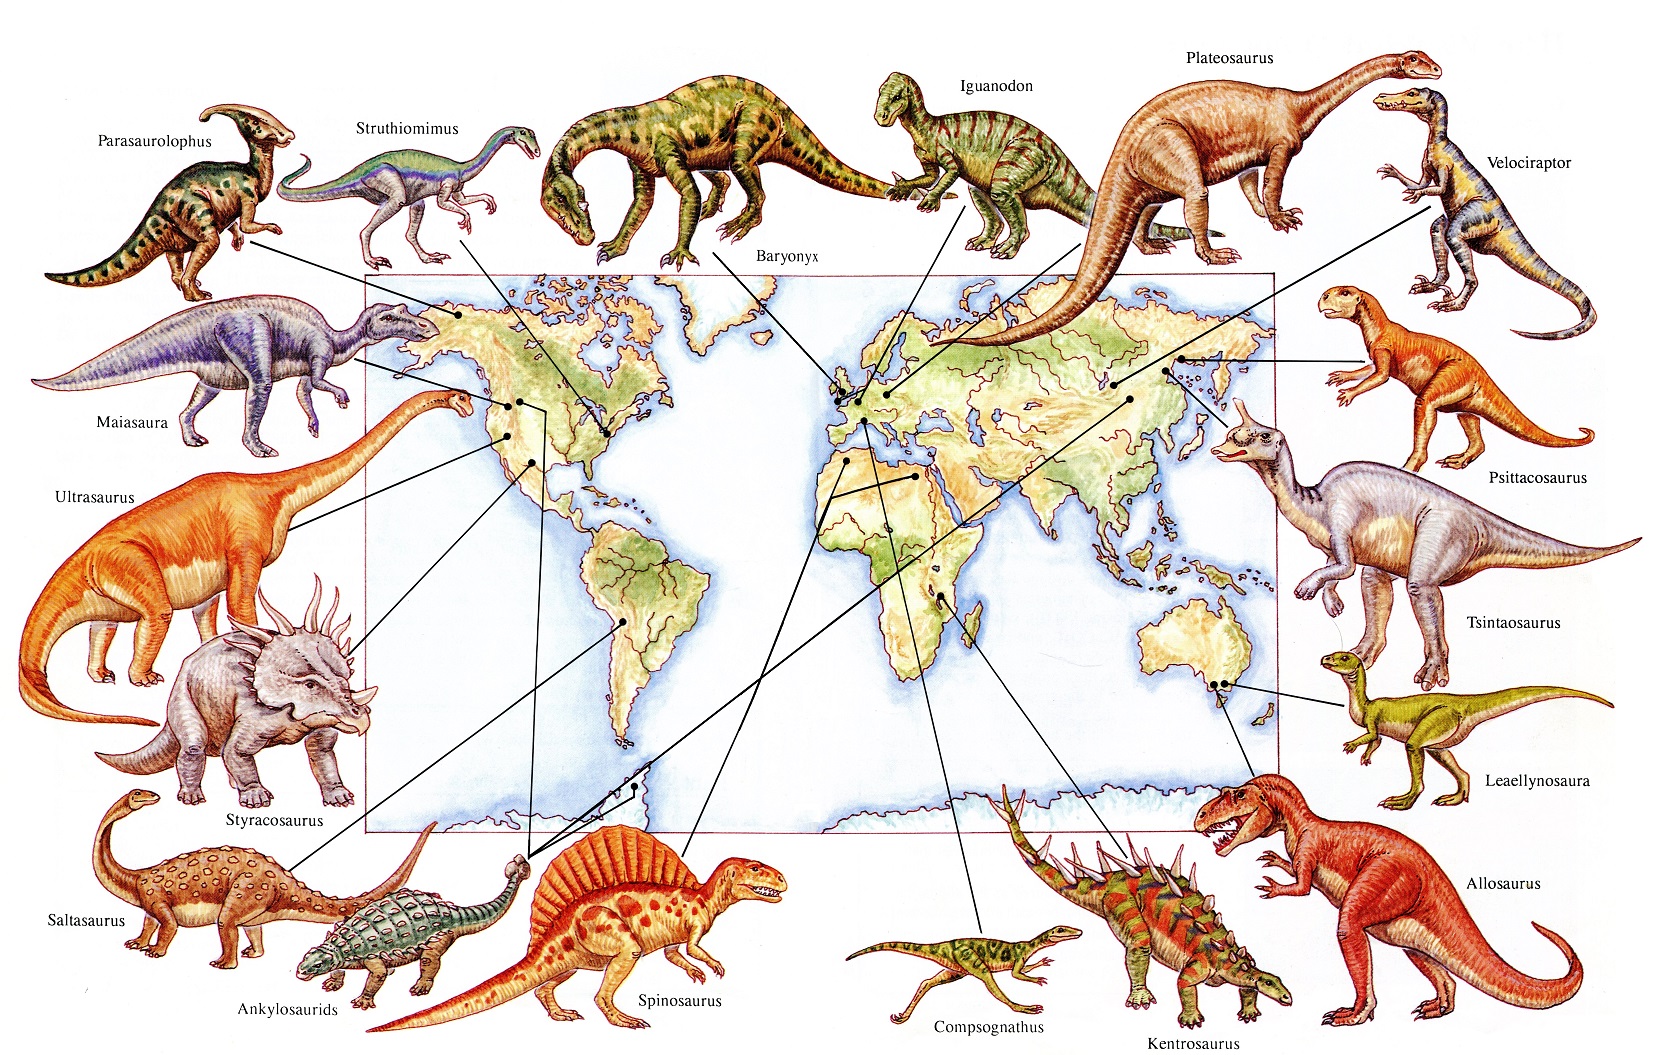 De ce au existat atât de multe specii de dinozauri?